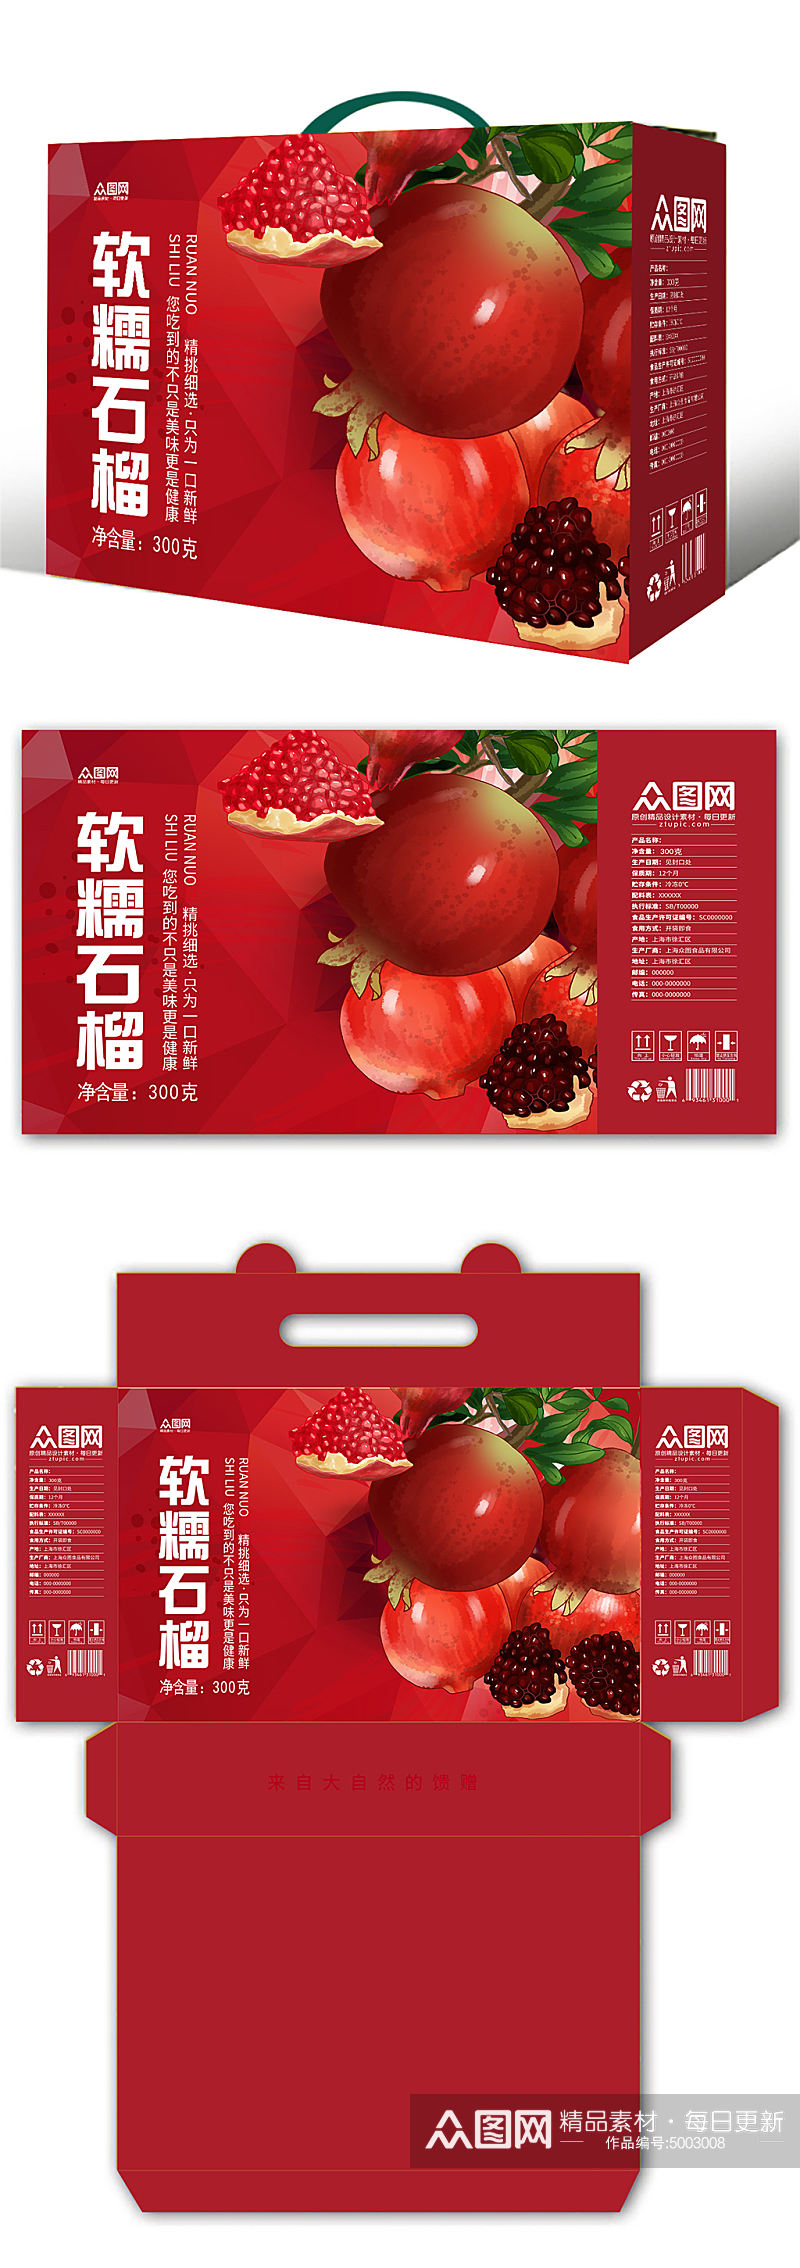 红色农产品新鲜水果石榴包装设计素材